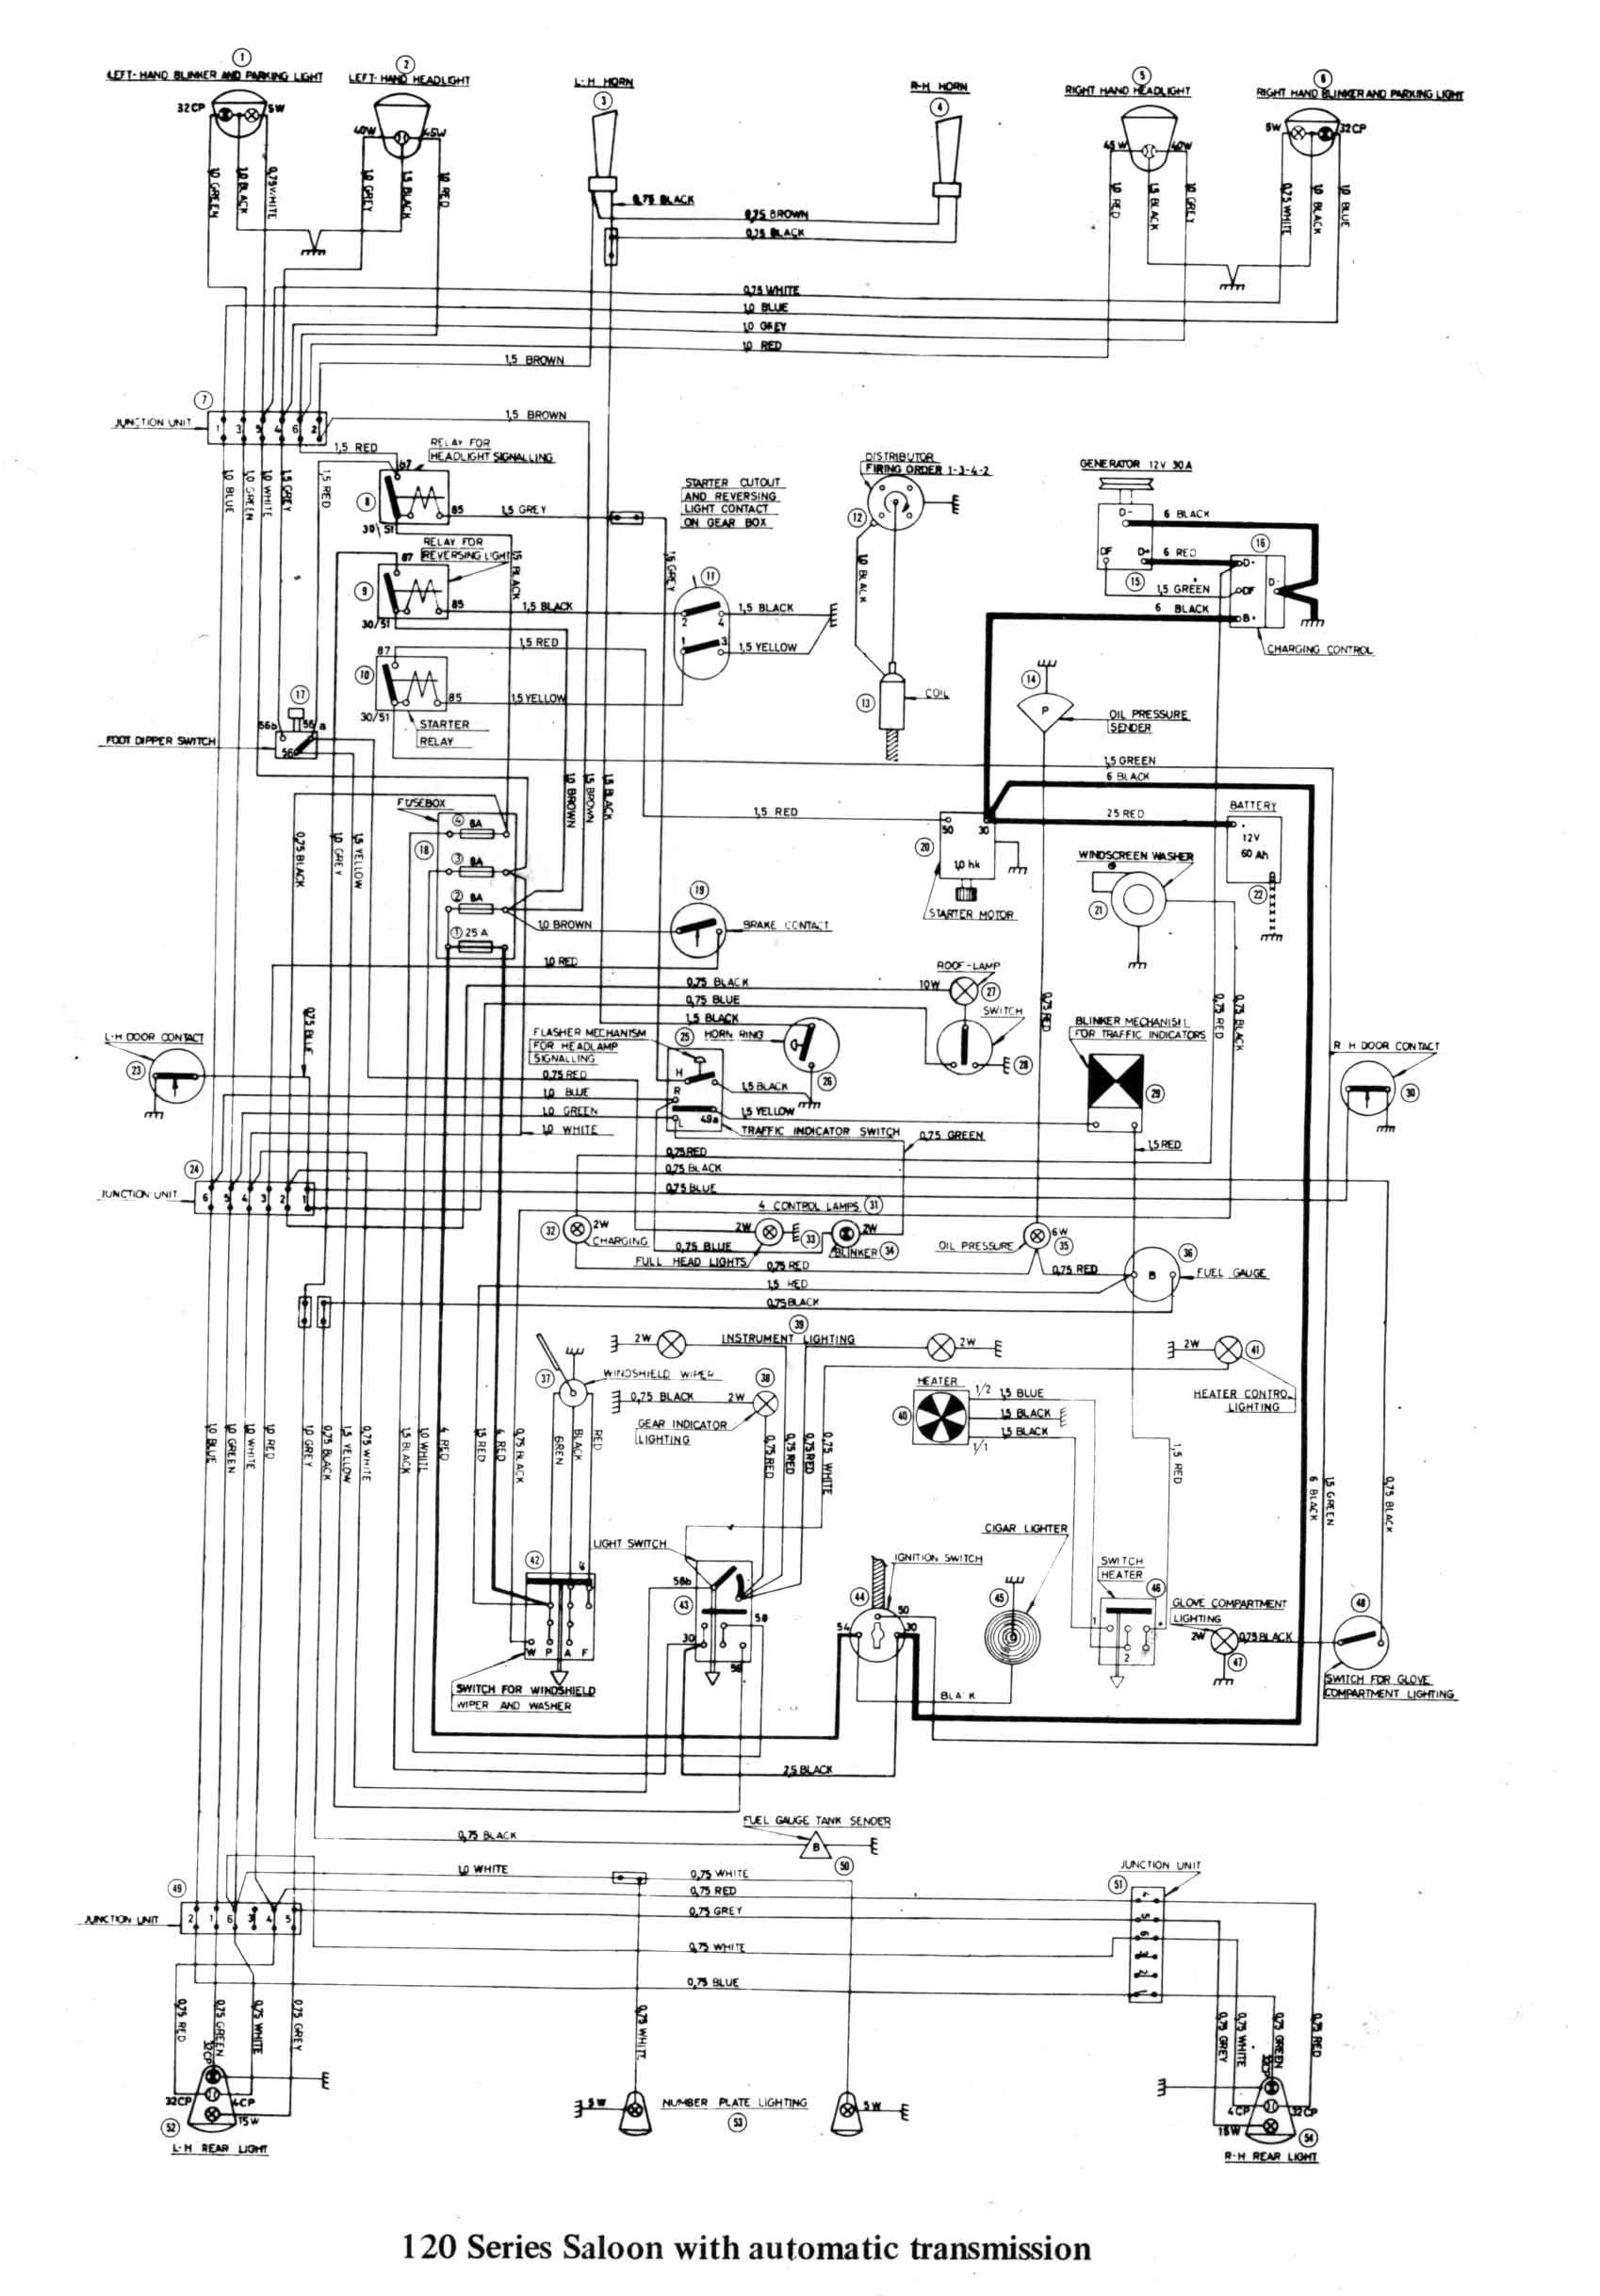 Manual Transmission Diagram Sw Em Od Retrofitting On A Vintage Volvo Of Manual Transmission Diagram